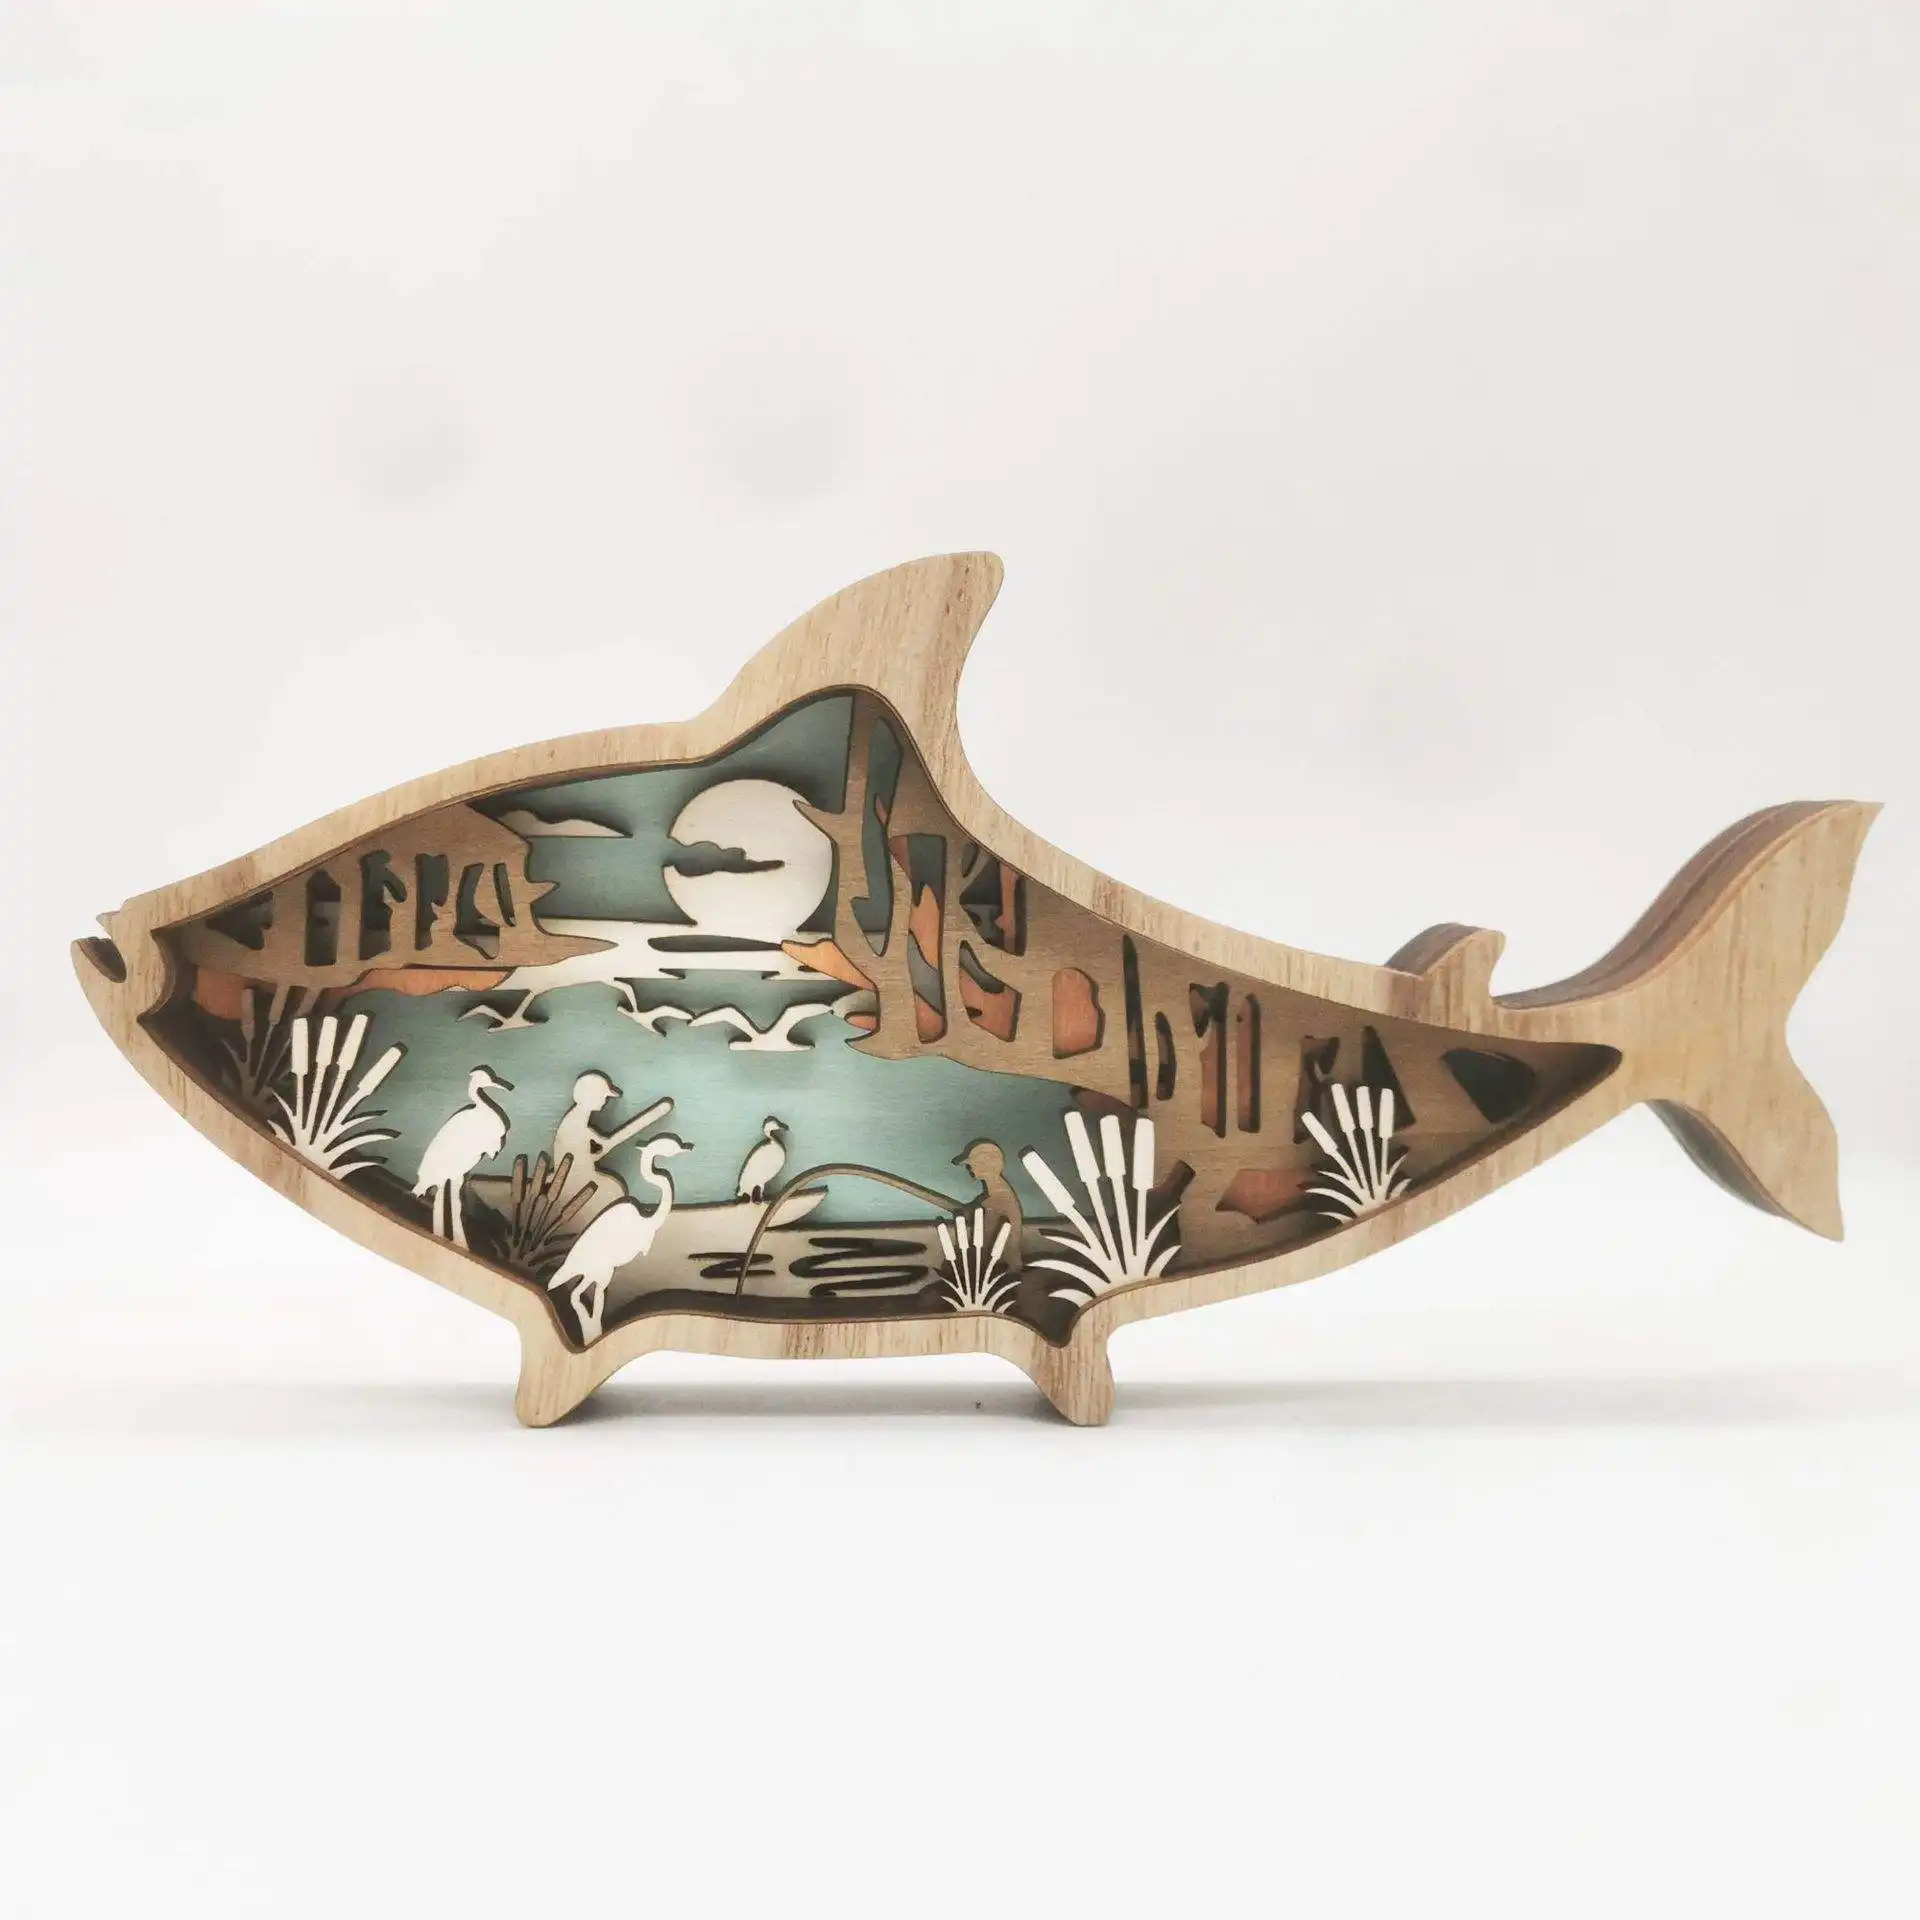 3D Light Exquisite personalizza soggiorno decorazione della casa pesce intaglio del legno piccoli ornamenti